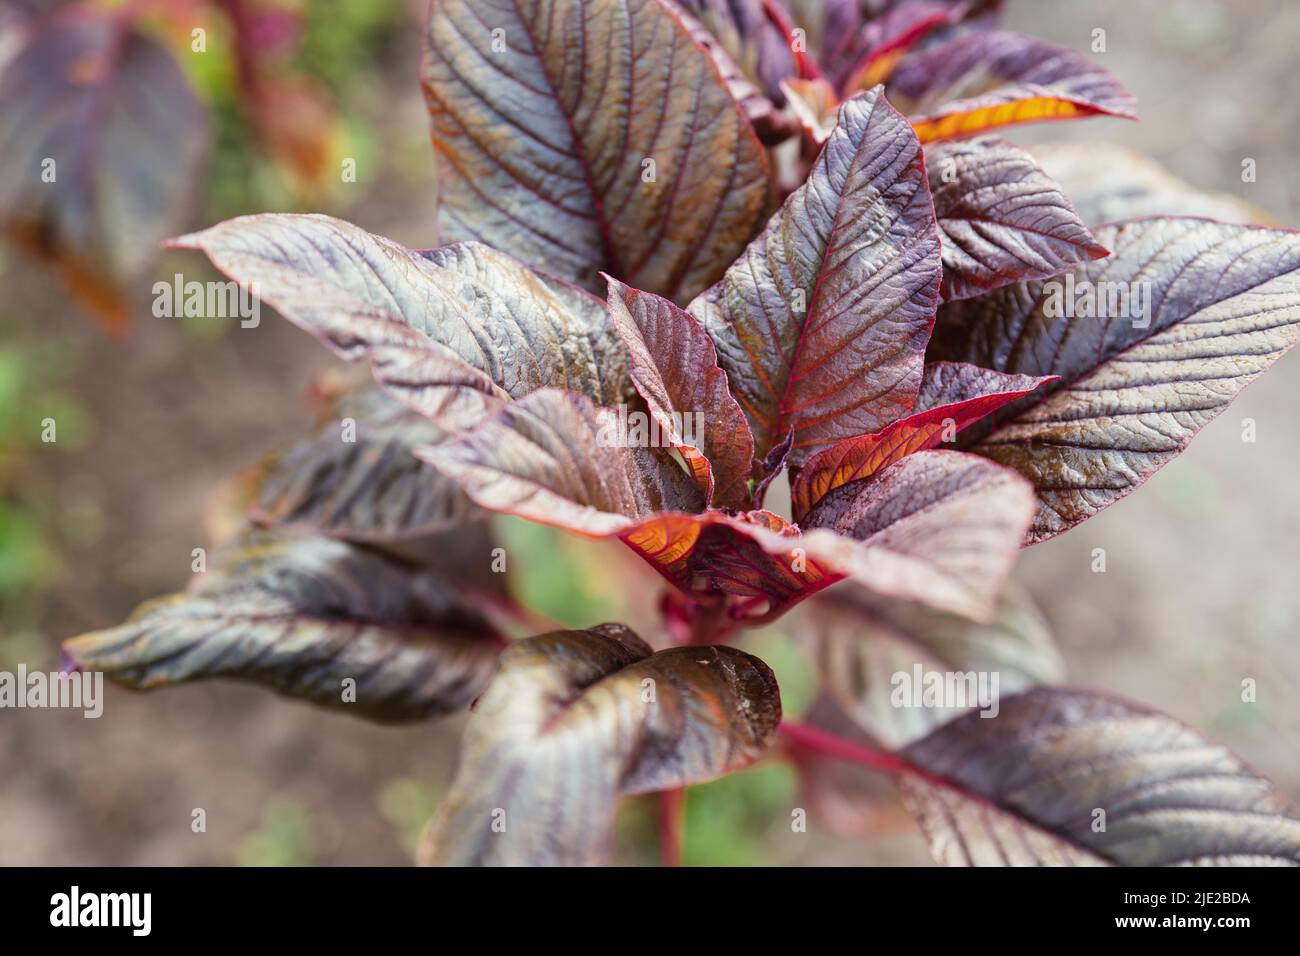 Red leaf vegetable amaranth (amaranthus lividus var. rubrum) plant in a garden. Stock Photo